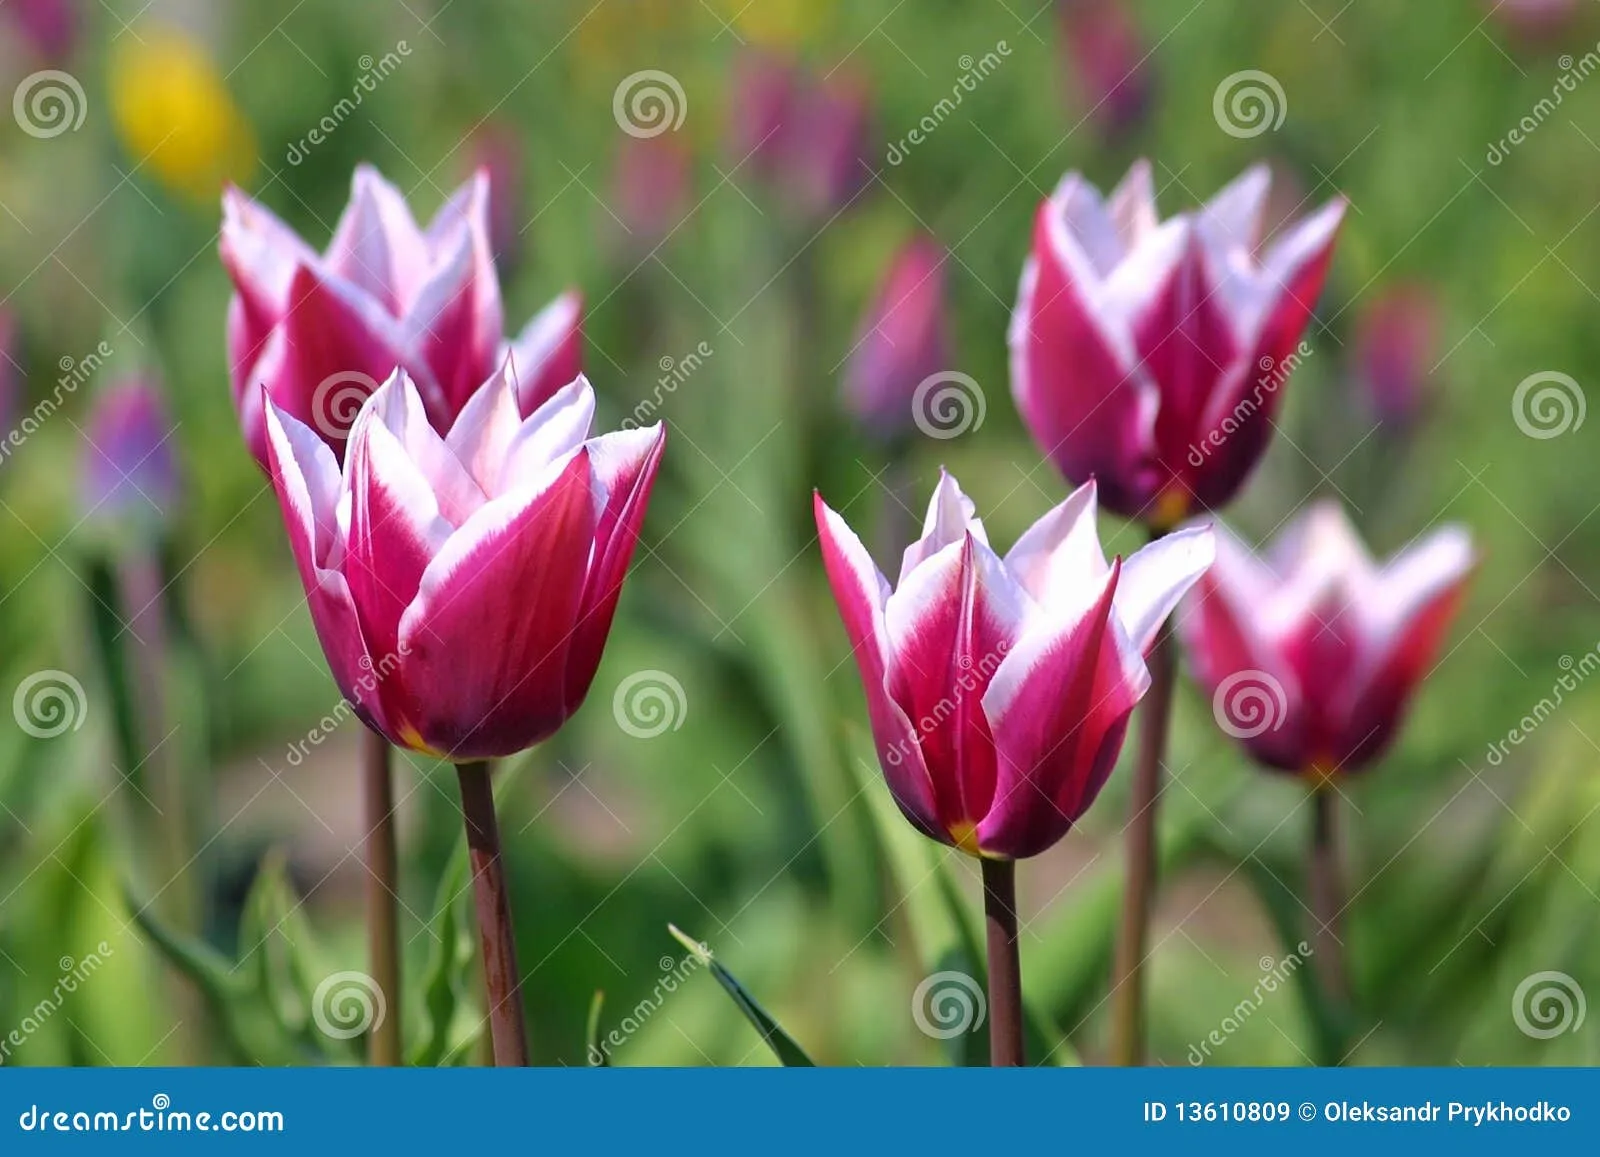 Tulipanes Violetas Imágenes de archivo libres de regalías - Imagen ...